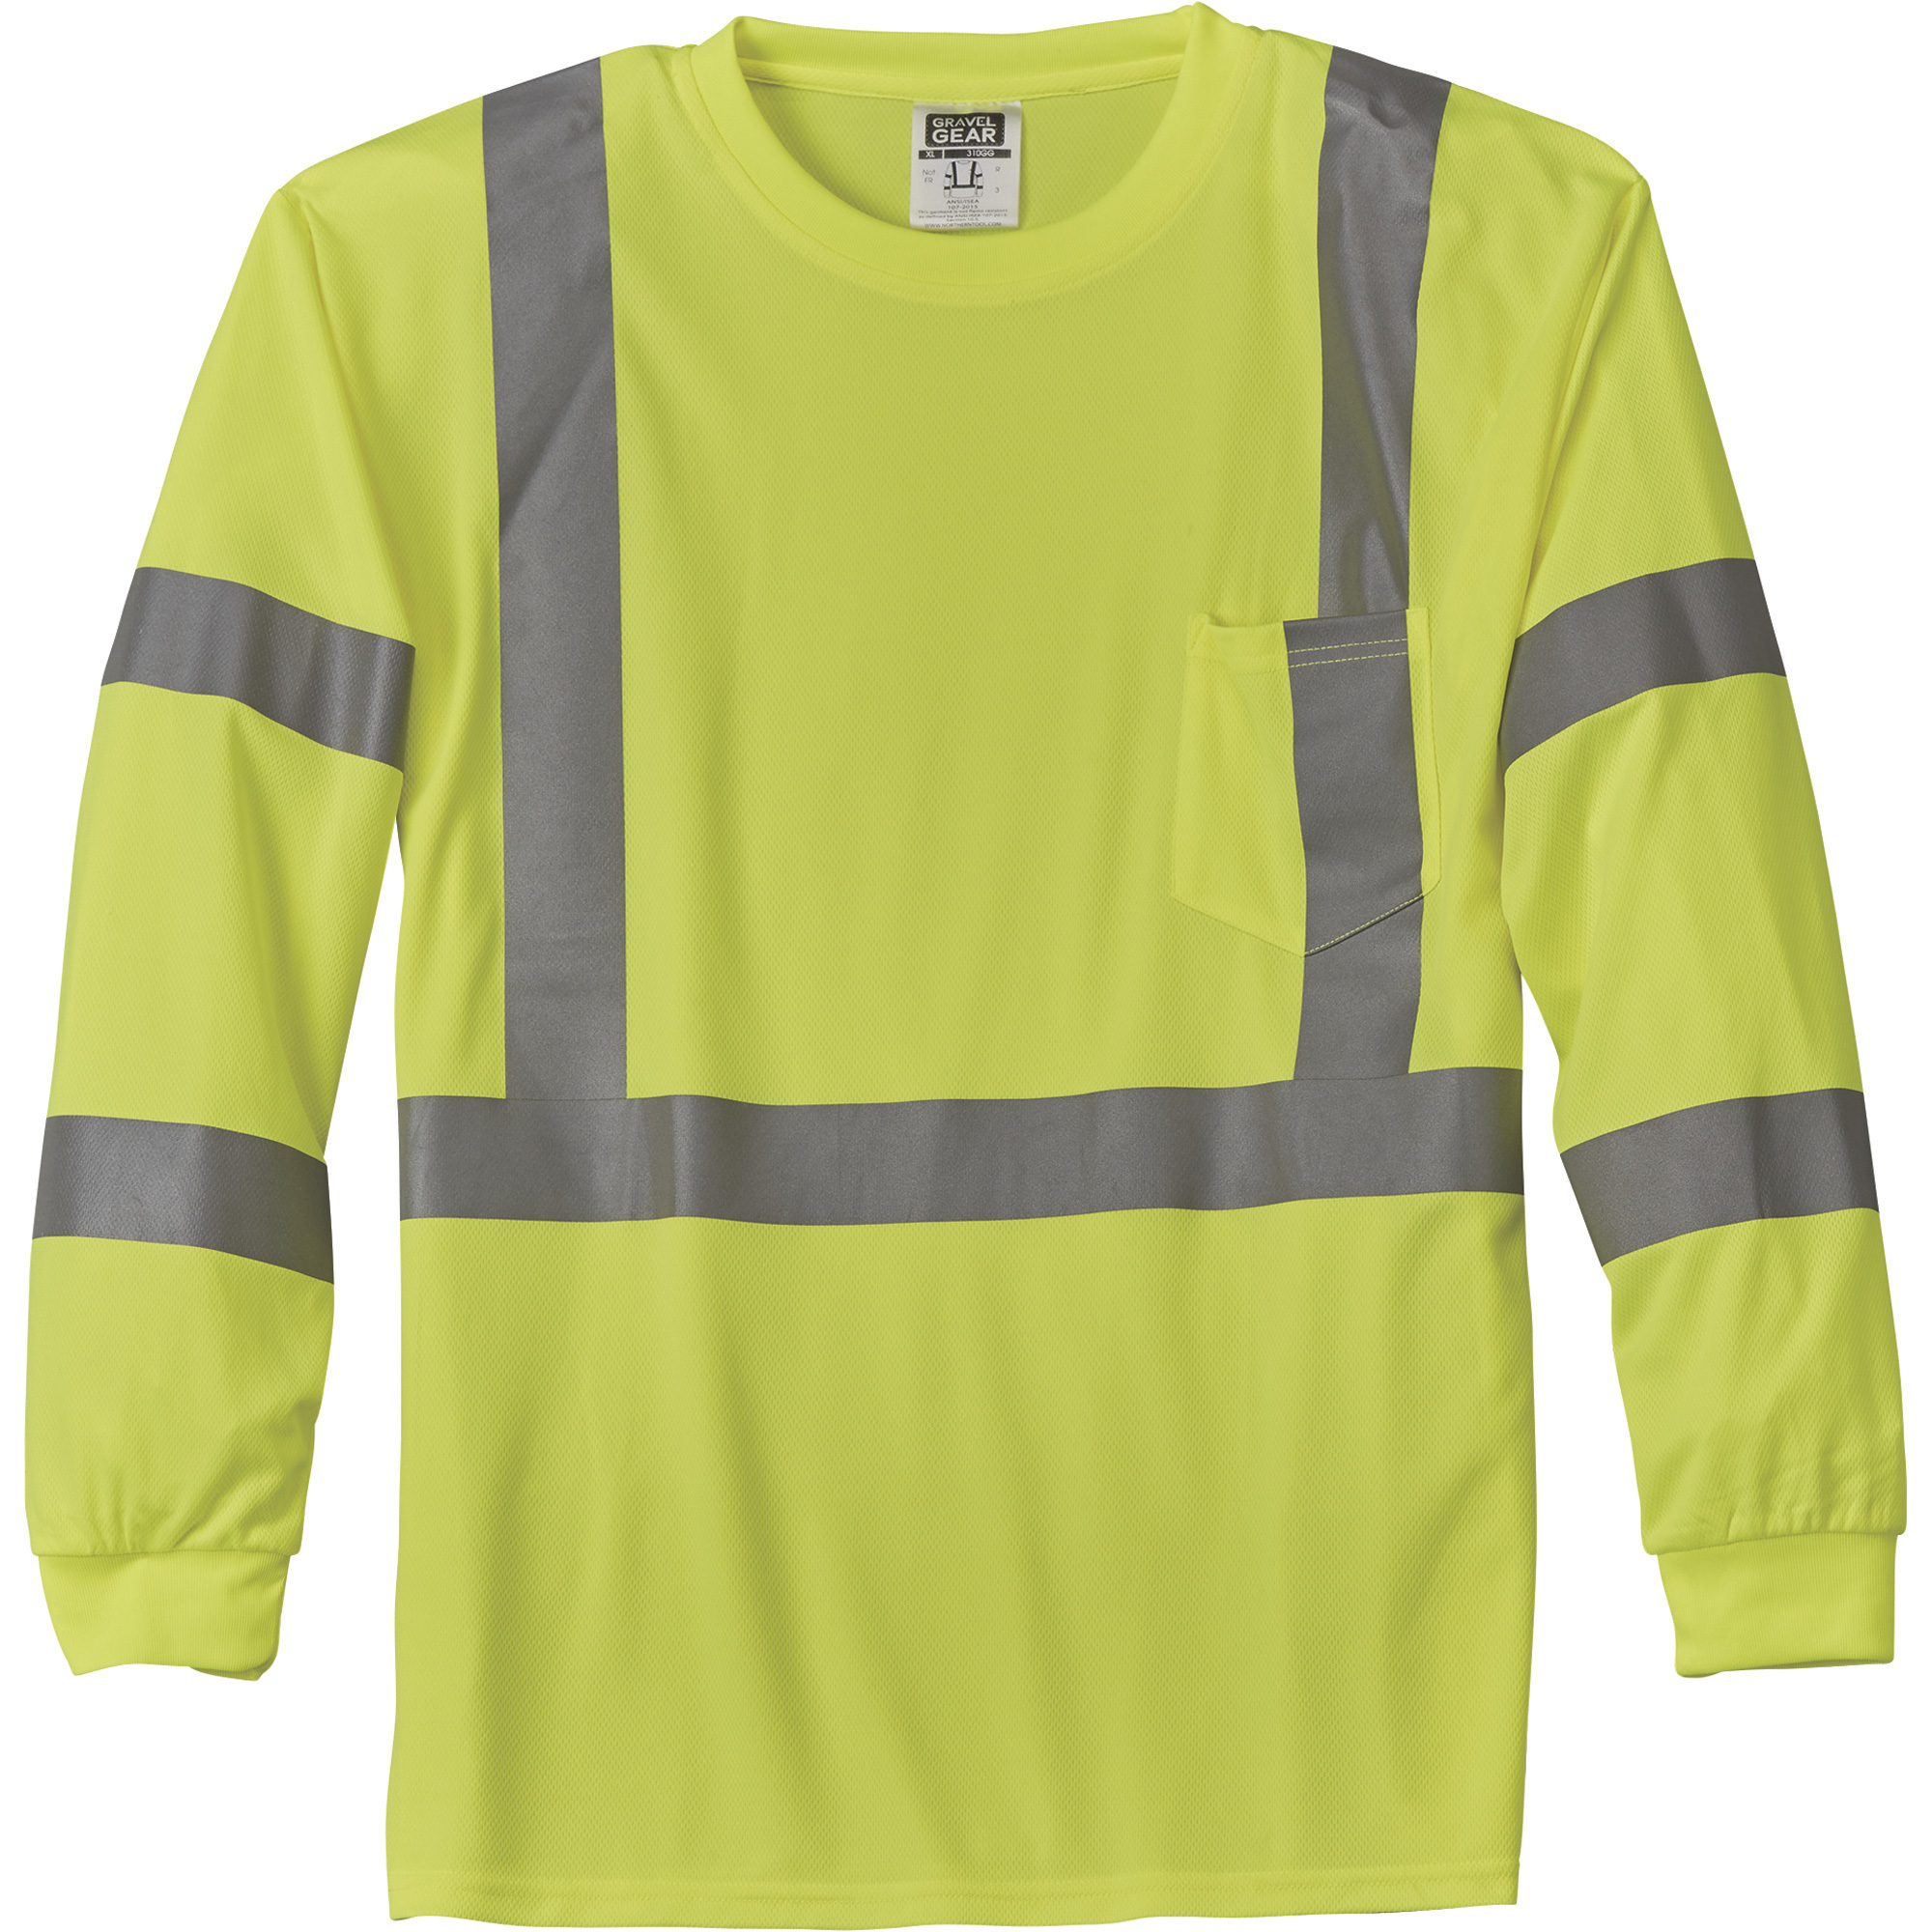 Gravel Gear HV Menâs Class 3 High Visibility High-Performance Long Sleeve T-Shirt â Lime, 2XL